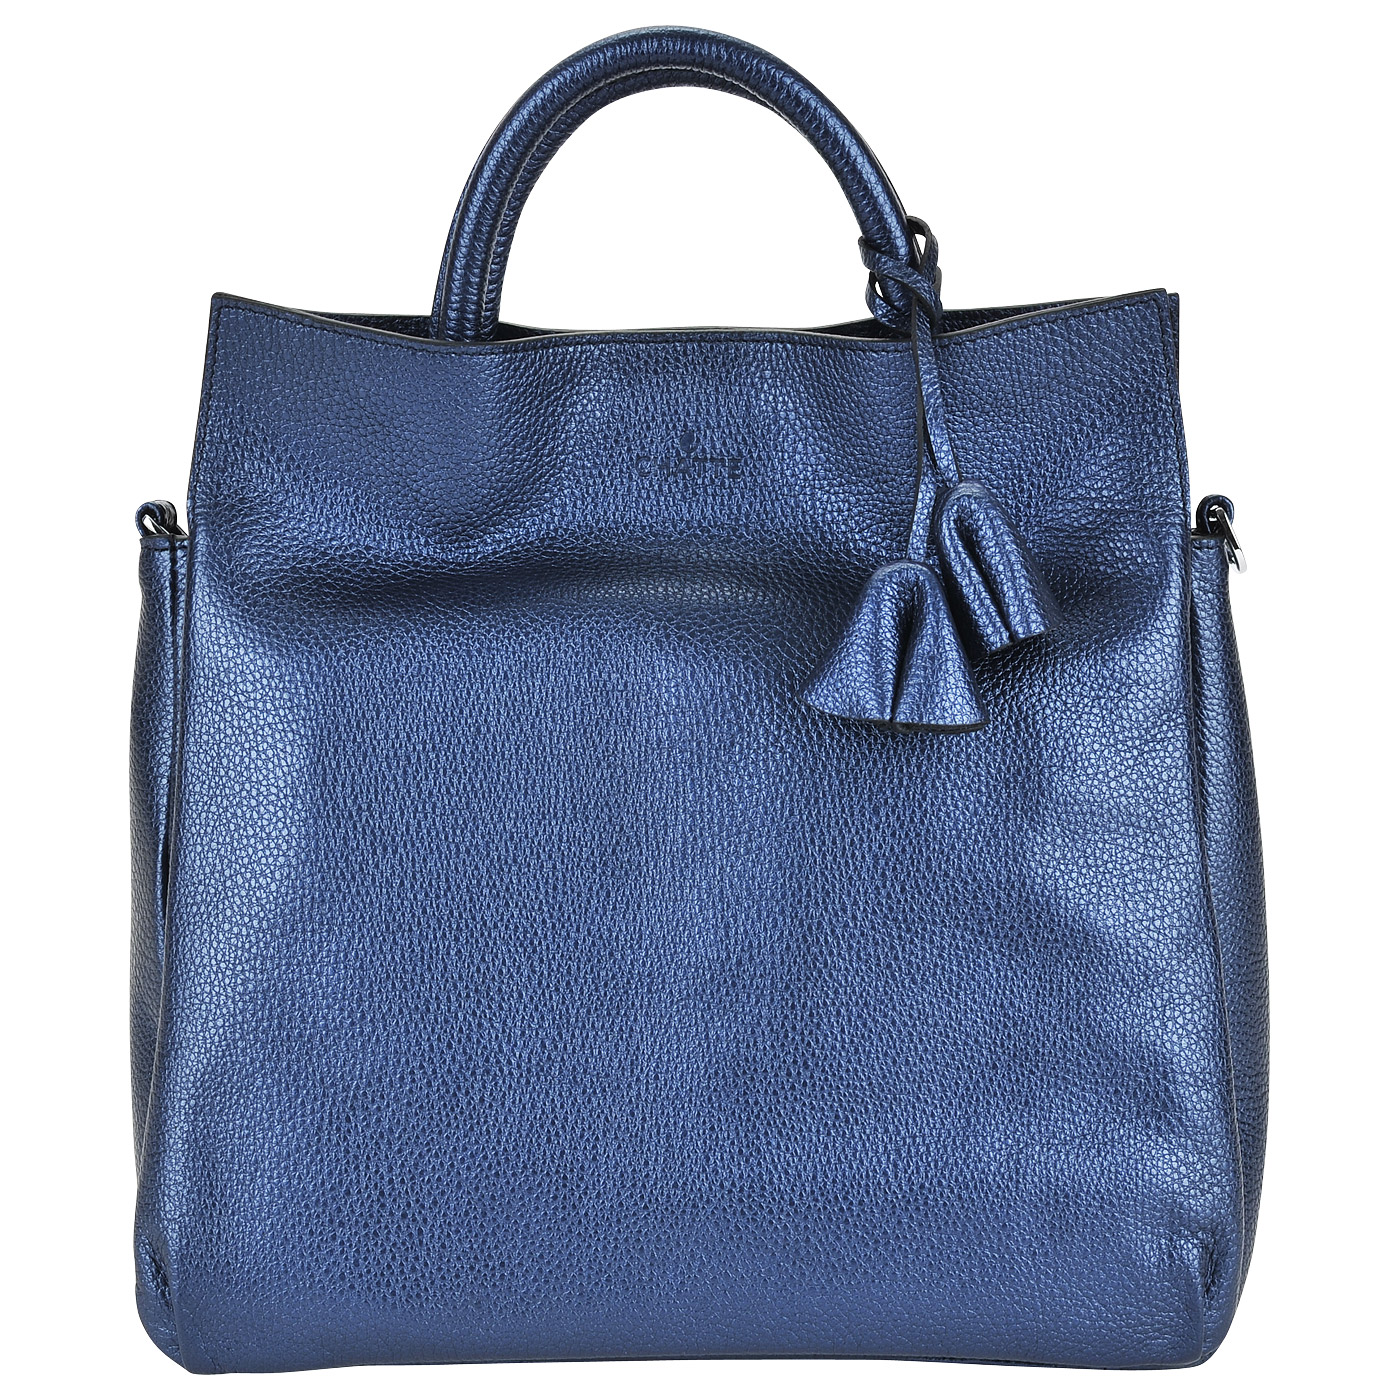 Chatte Женская сумка из металлизированной синей кожи